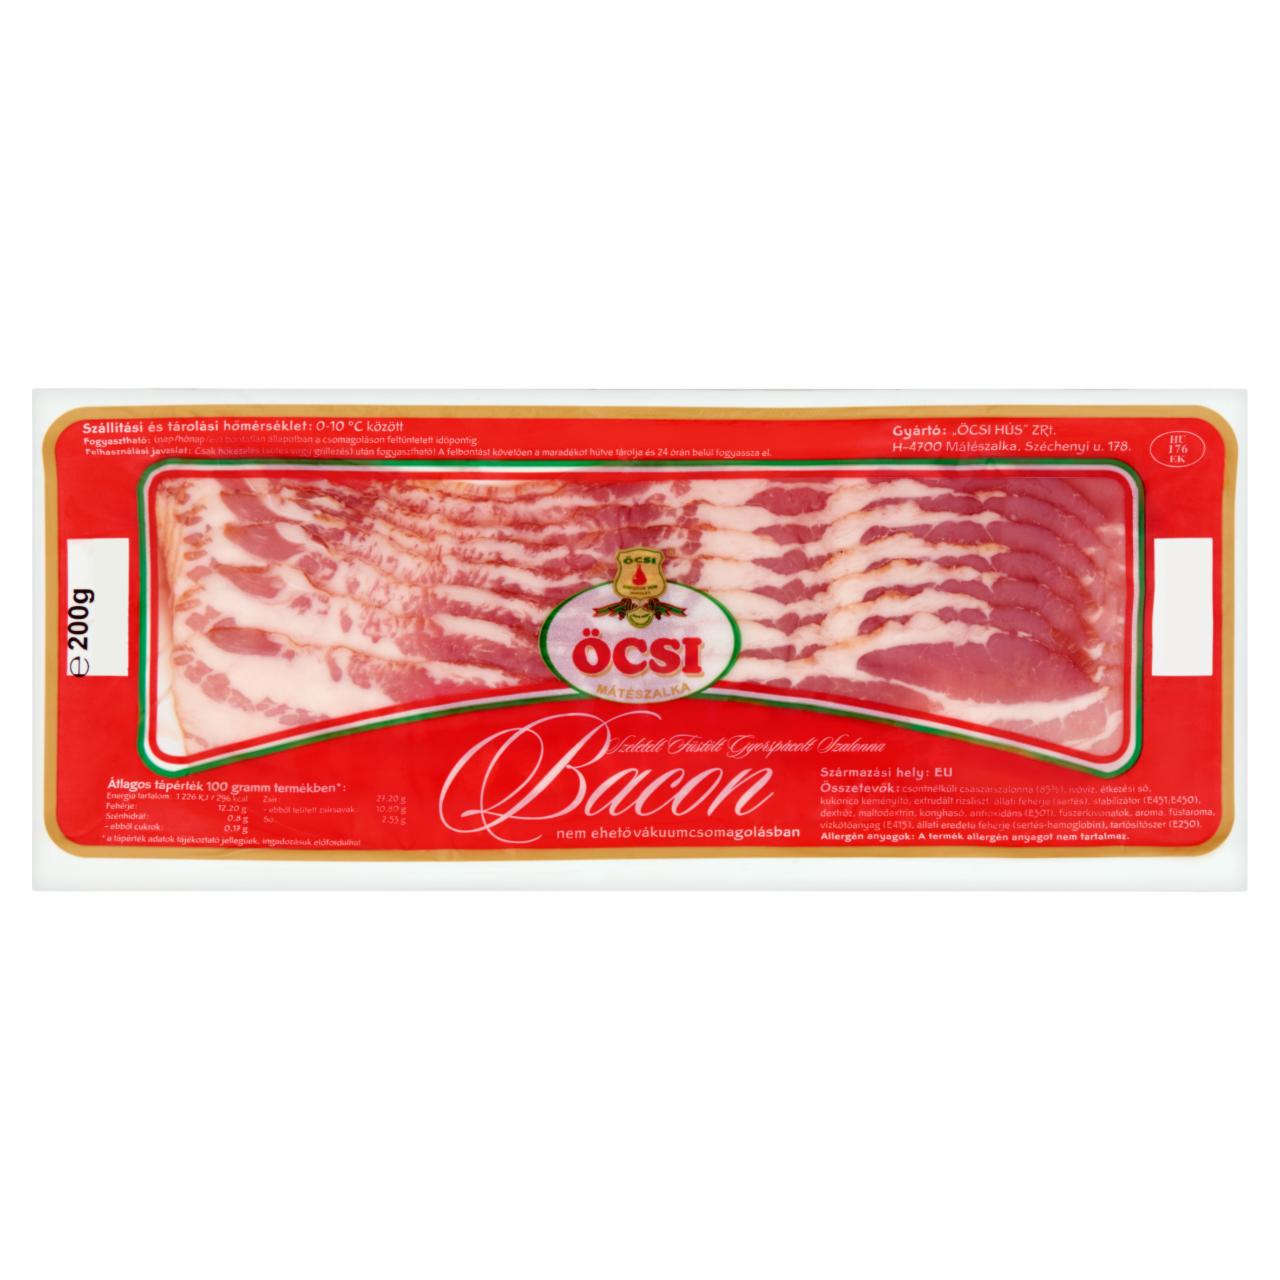 Képek - Öcsi szeletelt, füstölt bacon szalonna 200 g